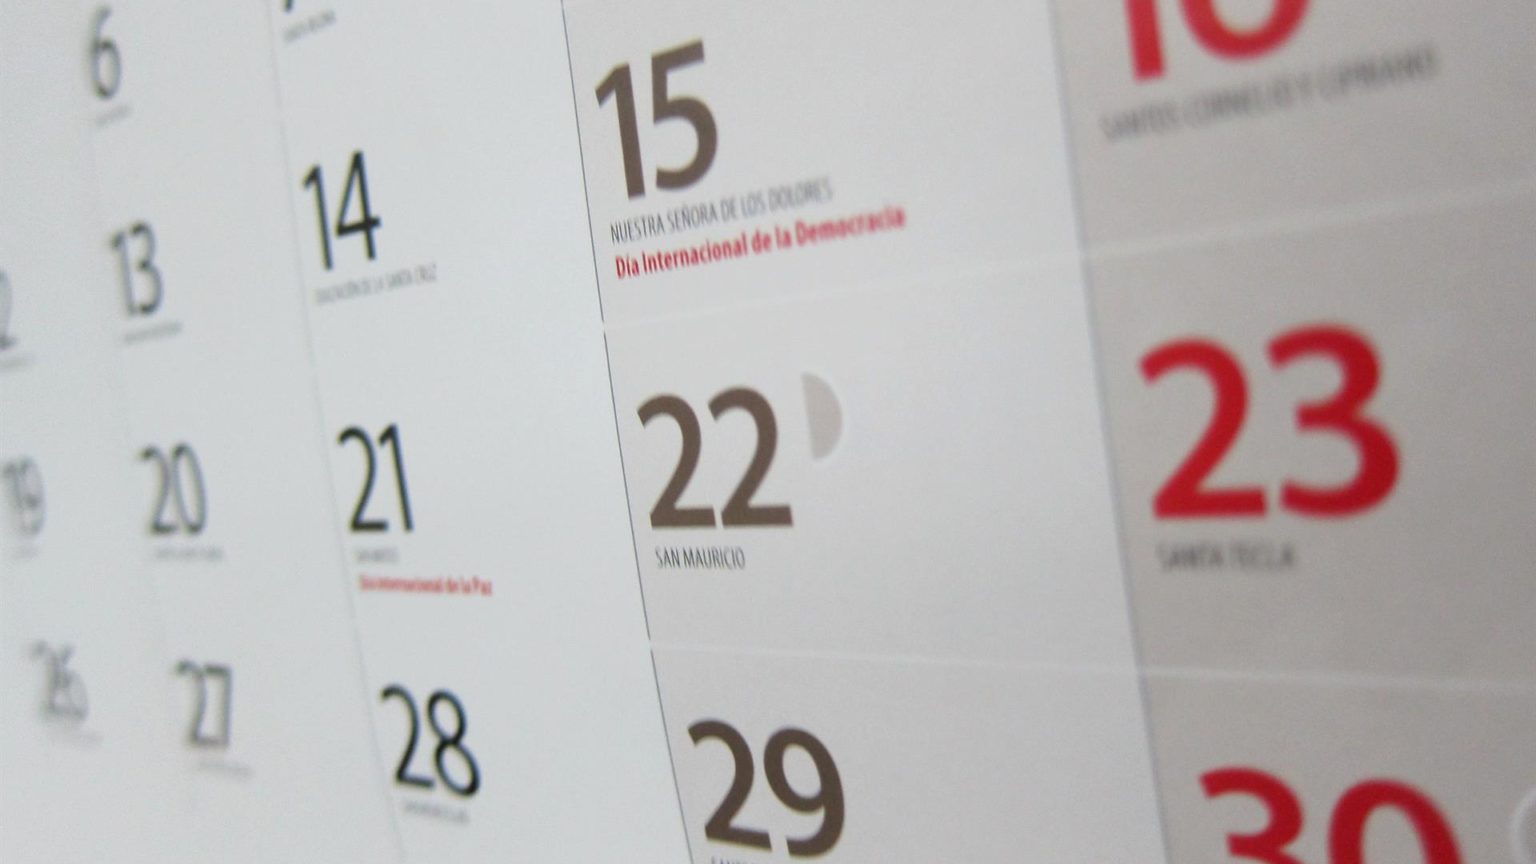 El BOE publica el calendario laboral de 2022: habrá 12 festivos nacionales, uno más que en 2021